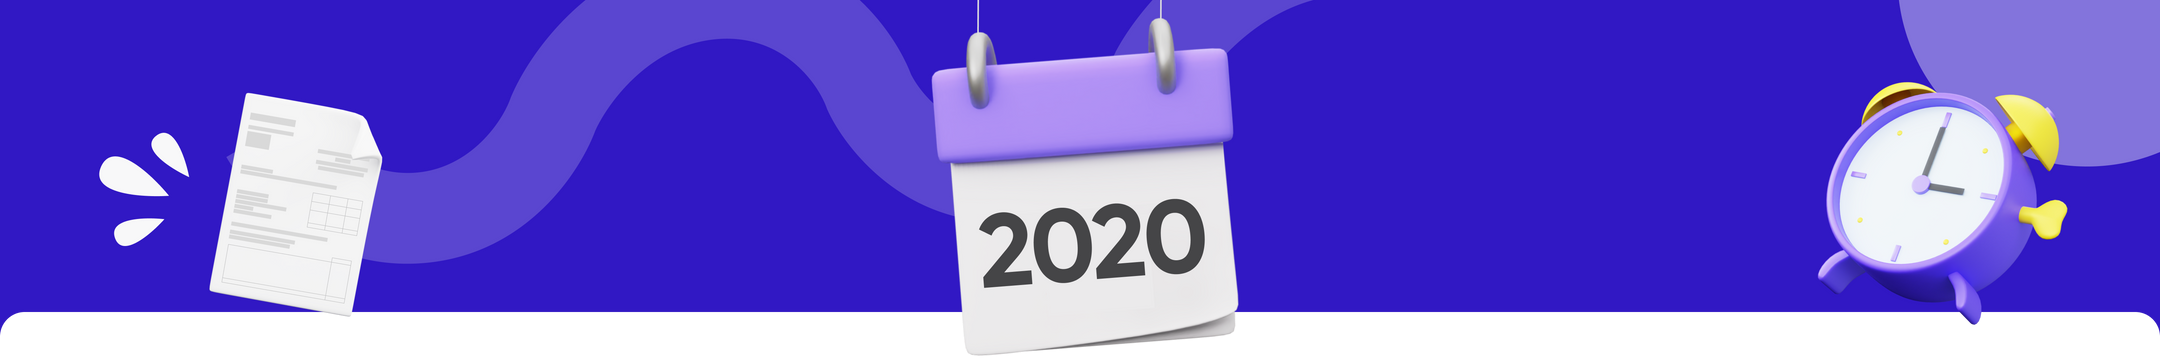 Steuererklärung 2020: Die Fristen und alle wichtigen Infos 